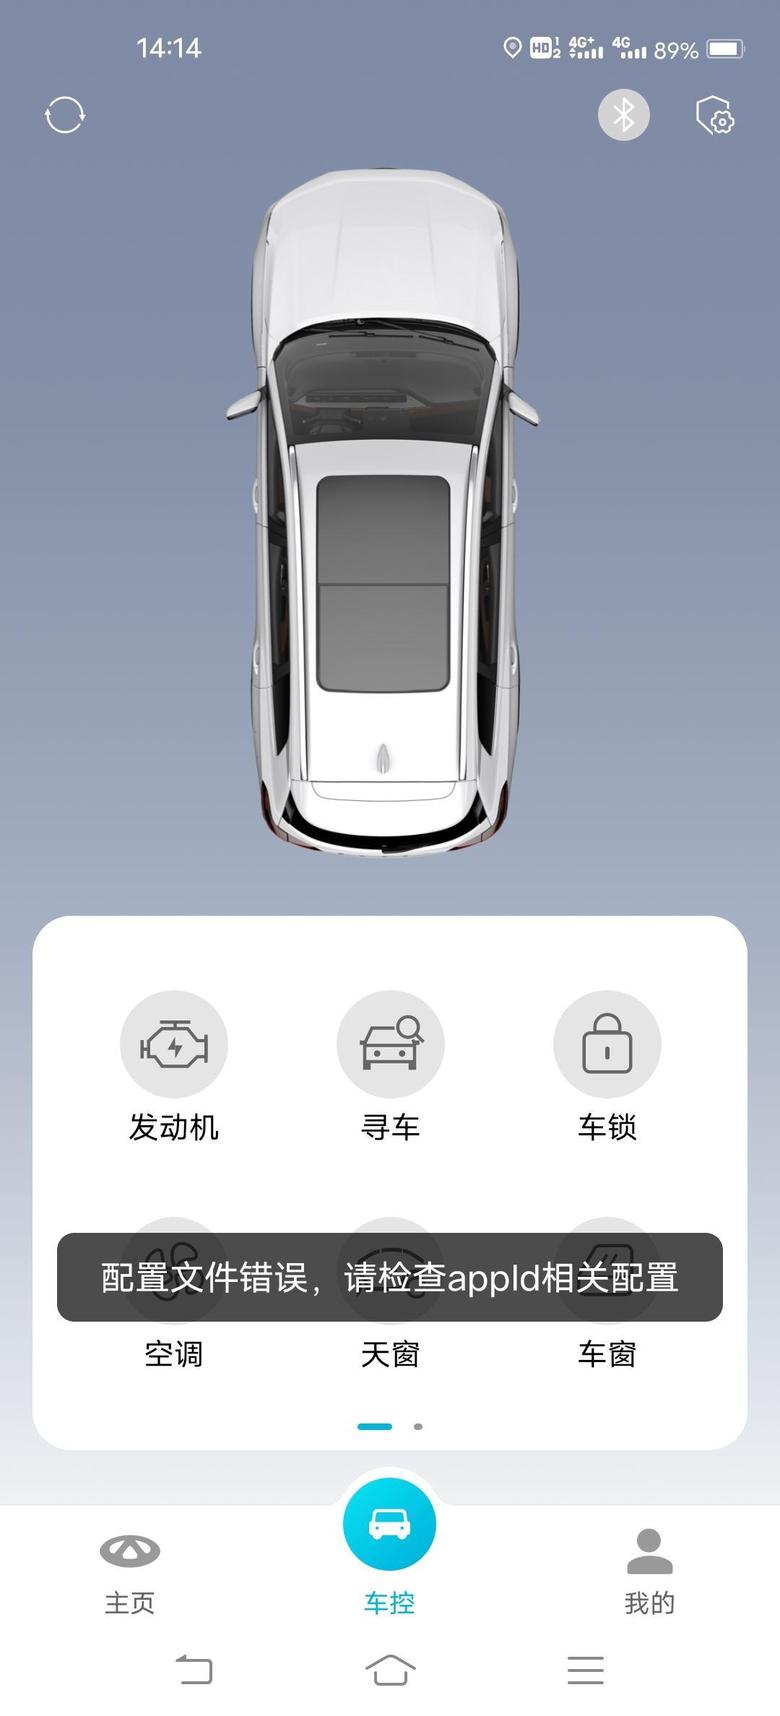 瑞虎8 plus 如题，APP是不是又抽风了，今天车里放个东西，没带钥匙，用手机，蓝牙不用连接就能解锁车子，app出现如图提示